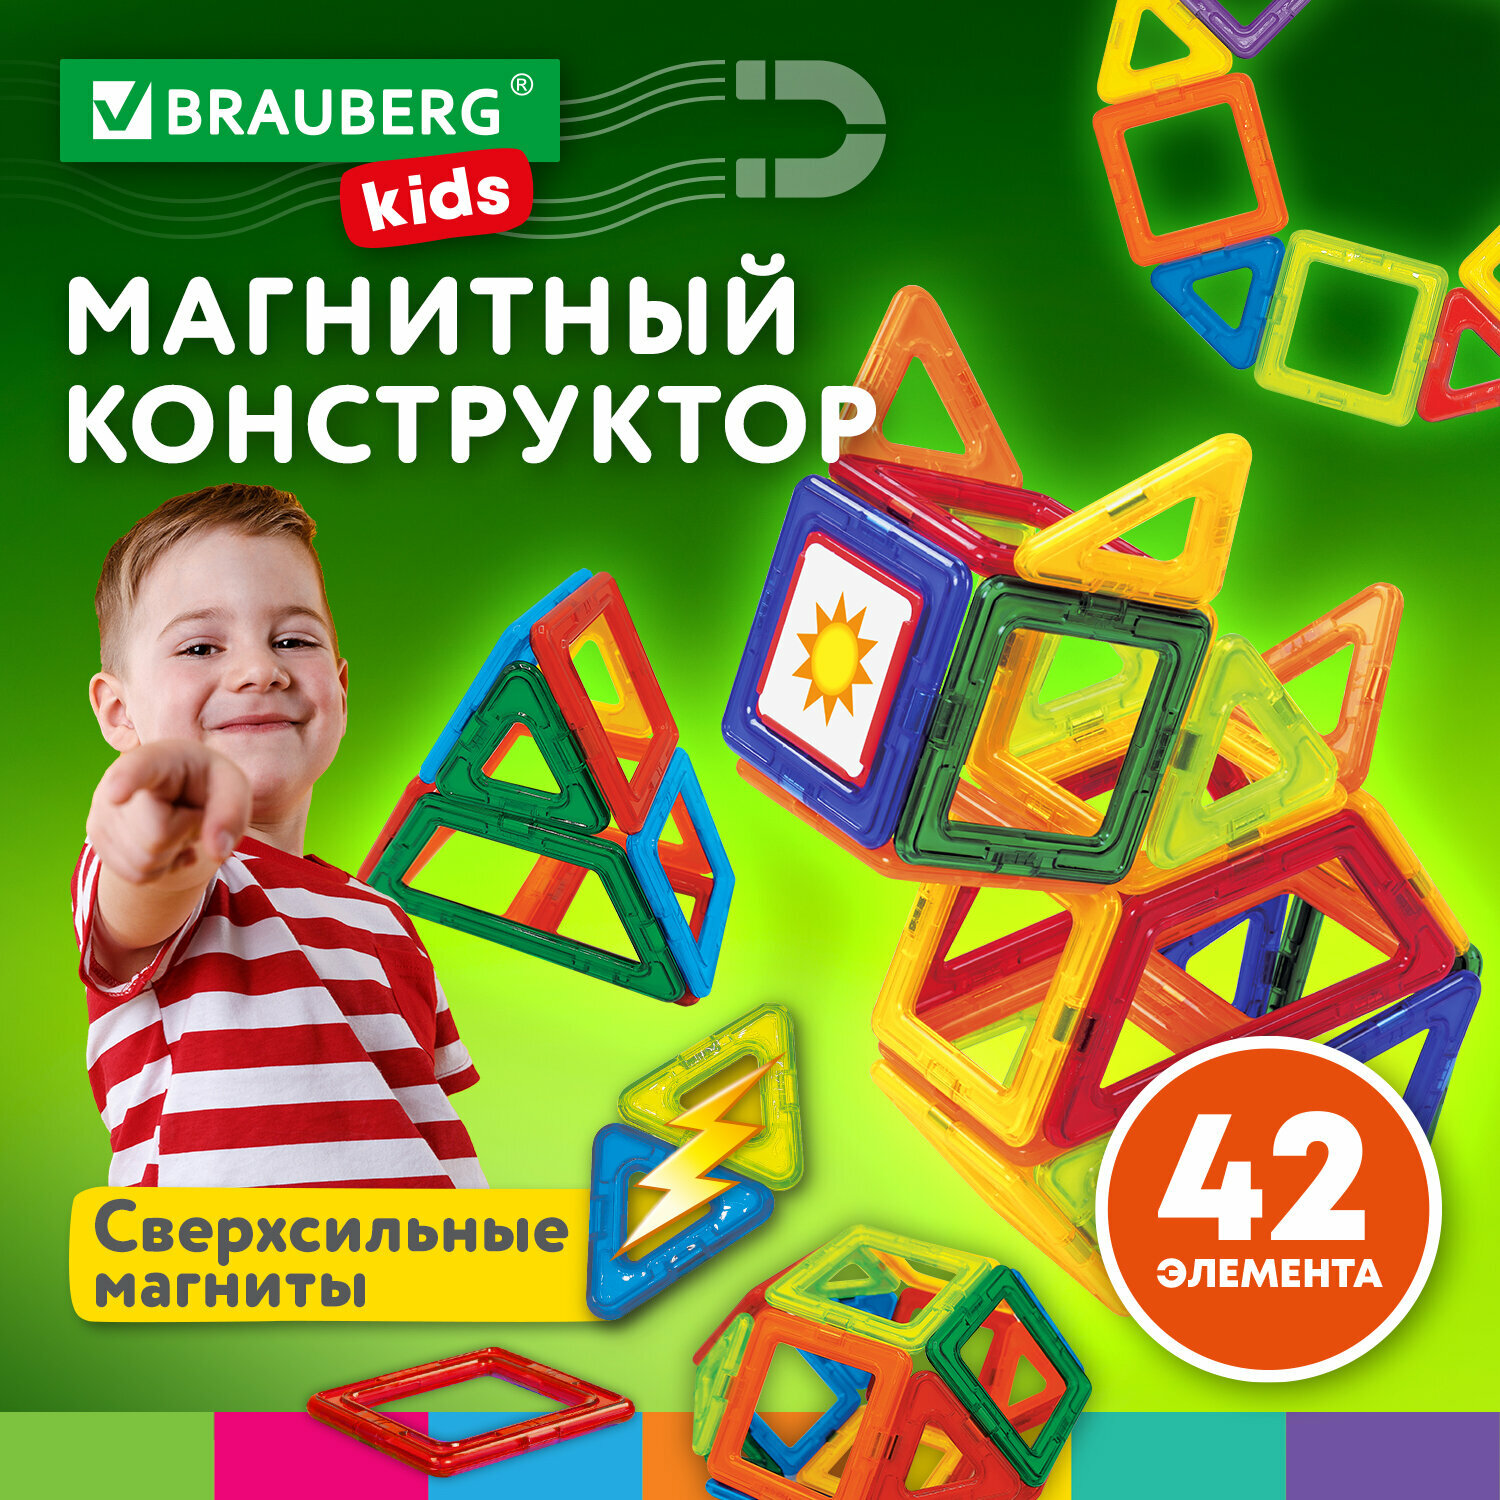 Конструктор магнитный детский развивающий для мальчиков / девочек / игрушки для детей Big Magnetic Blocks-42, 42 детали, Brauberg Kids